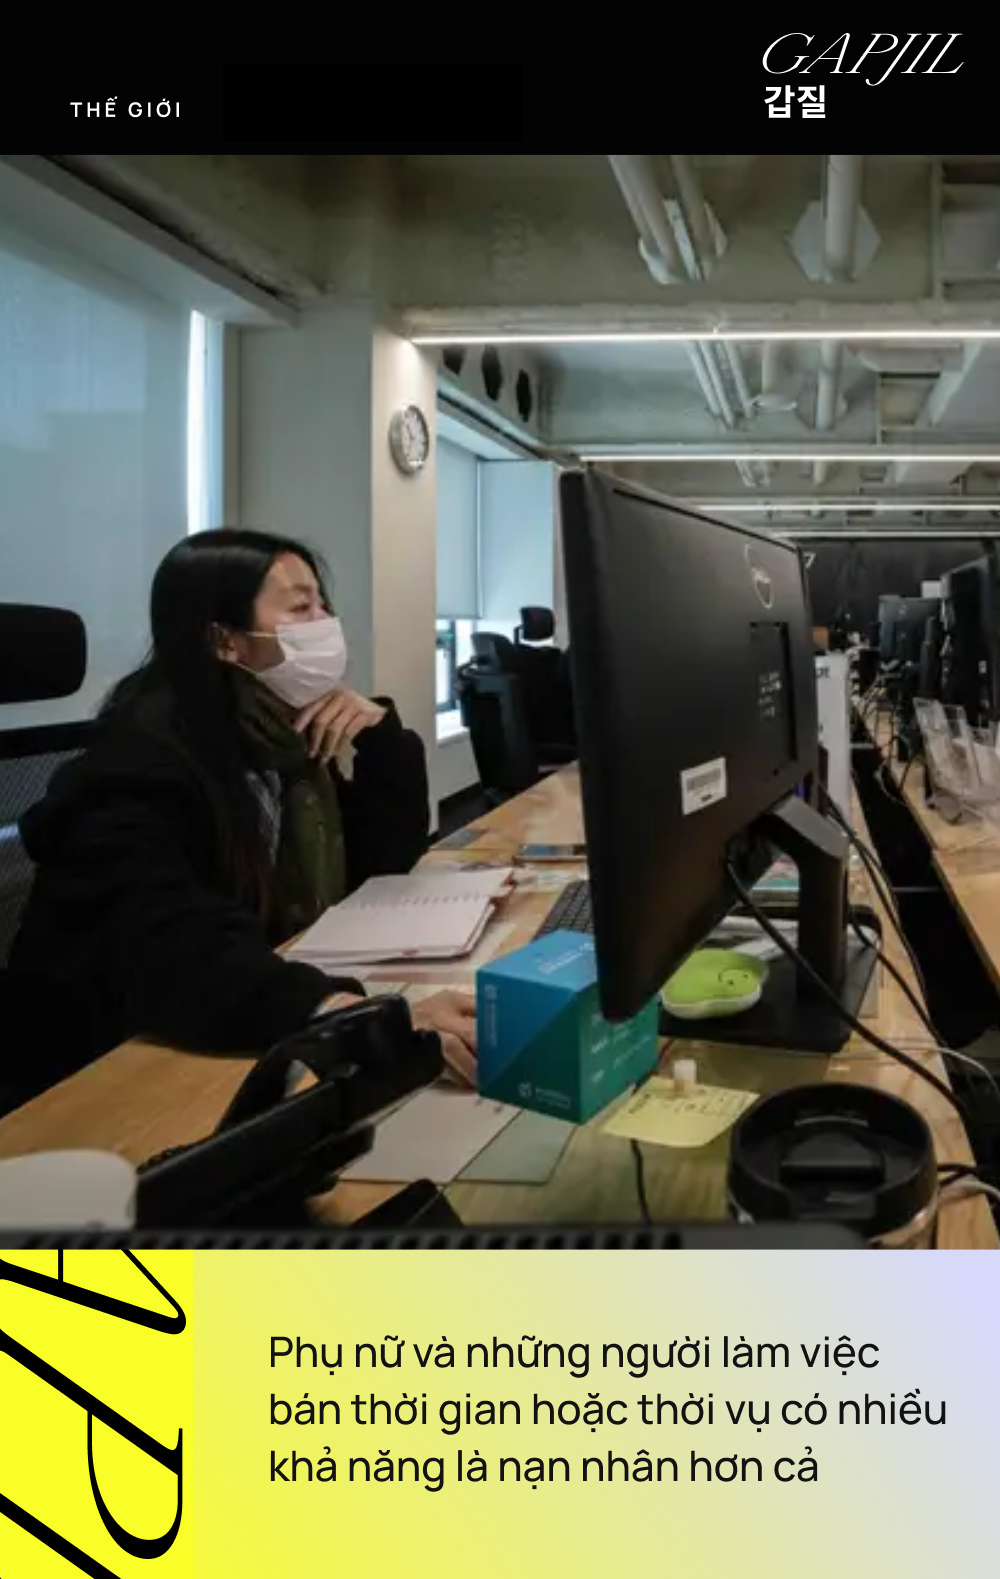 Startup Hàn Quốc và làn sóng phản đối nạn phân cấp nơi làm việc &quot;gapjil&quot;: Những thay đổi tích cực đang dần thành hình! - Ảnh 6.